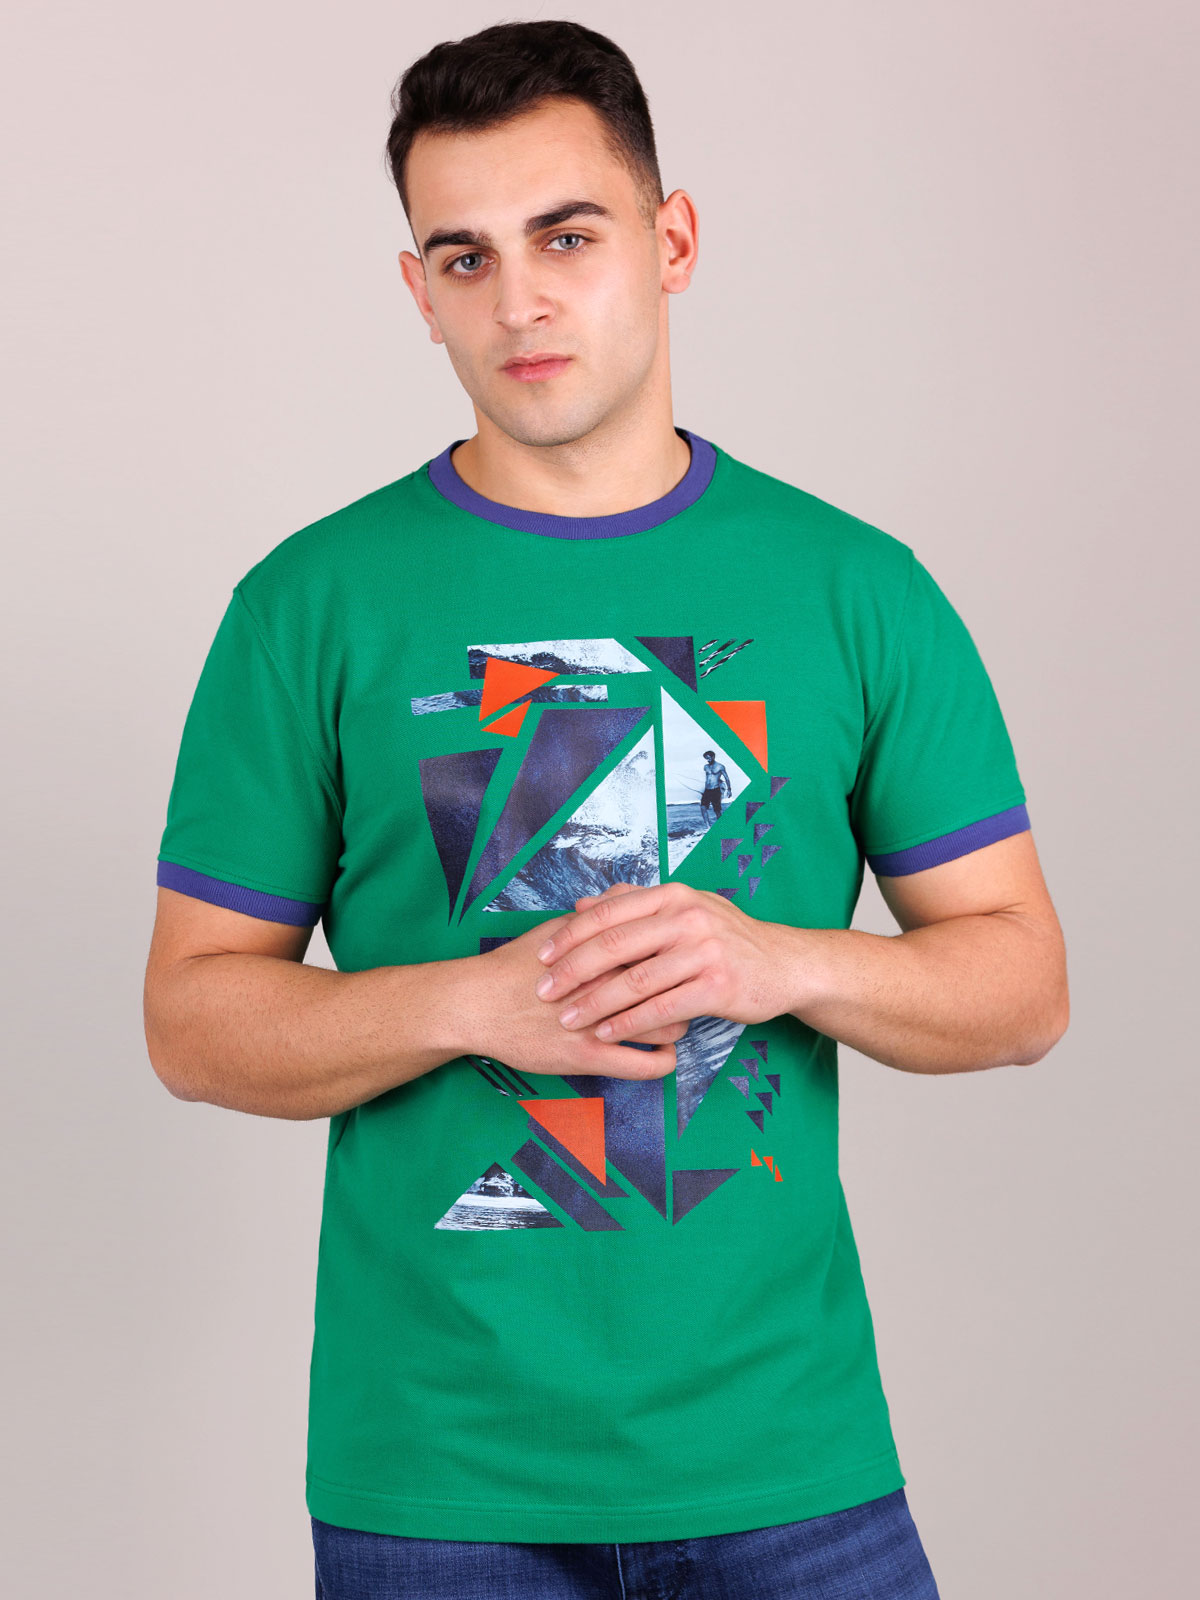 Tshirt σε πράσινο χρώμα - 95367 € 23.62 img3